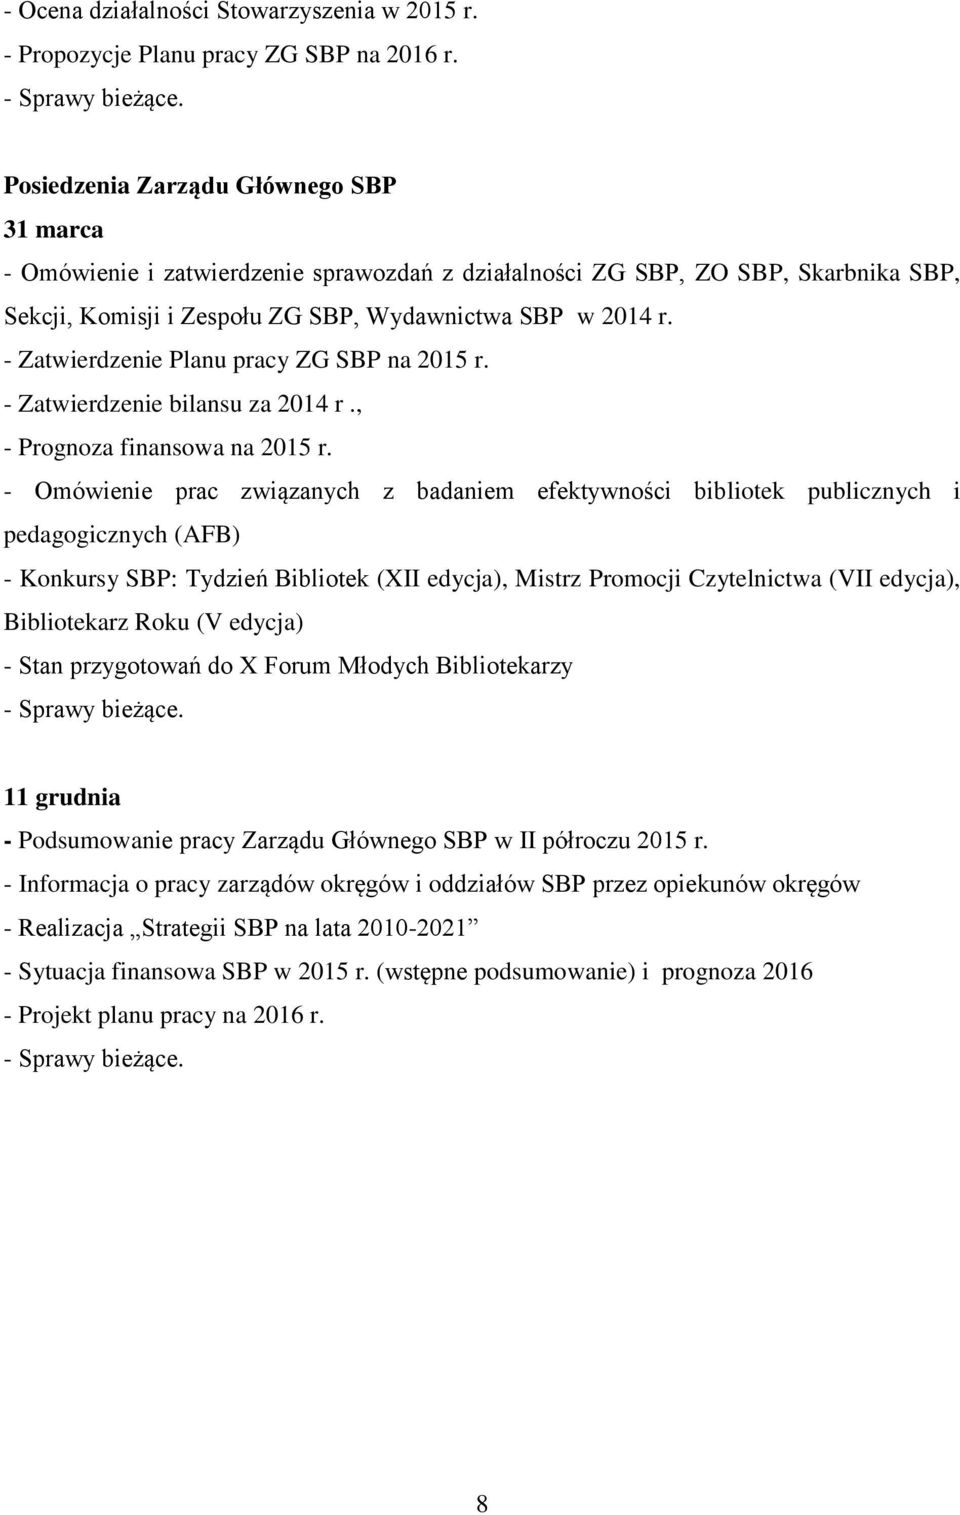 - Zatwierdzenie Planu pracy ZG SBP na 2015 r. - Zatwierdzenie bilansu za 2014 r., - Prognoza finansowa na 2015 r.